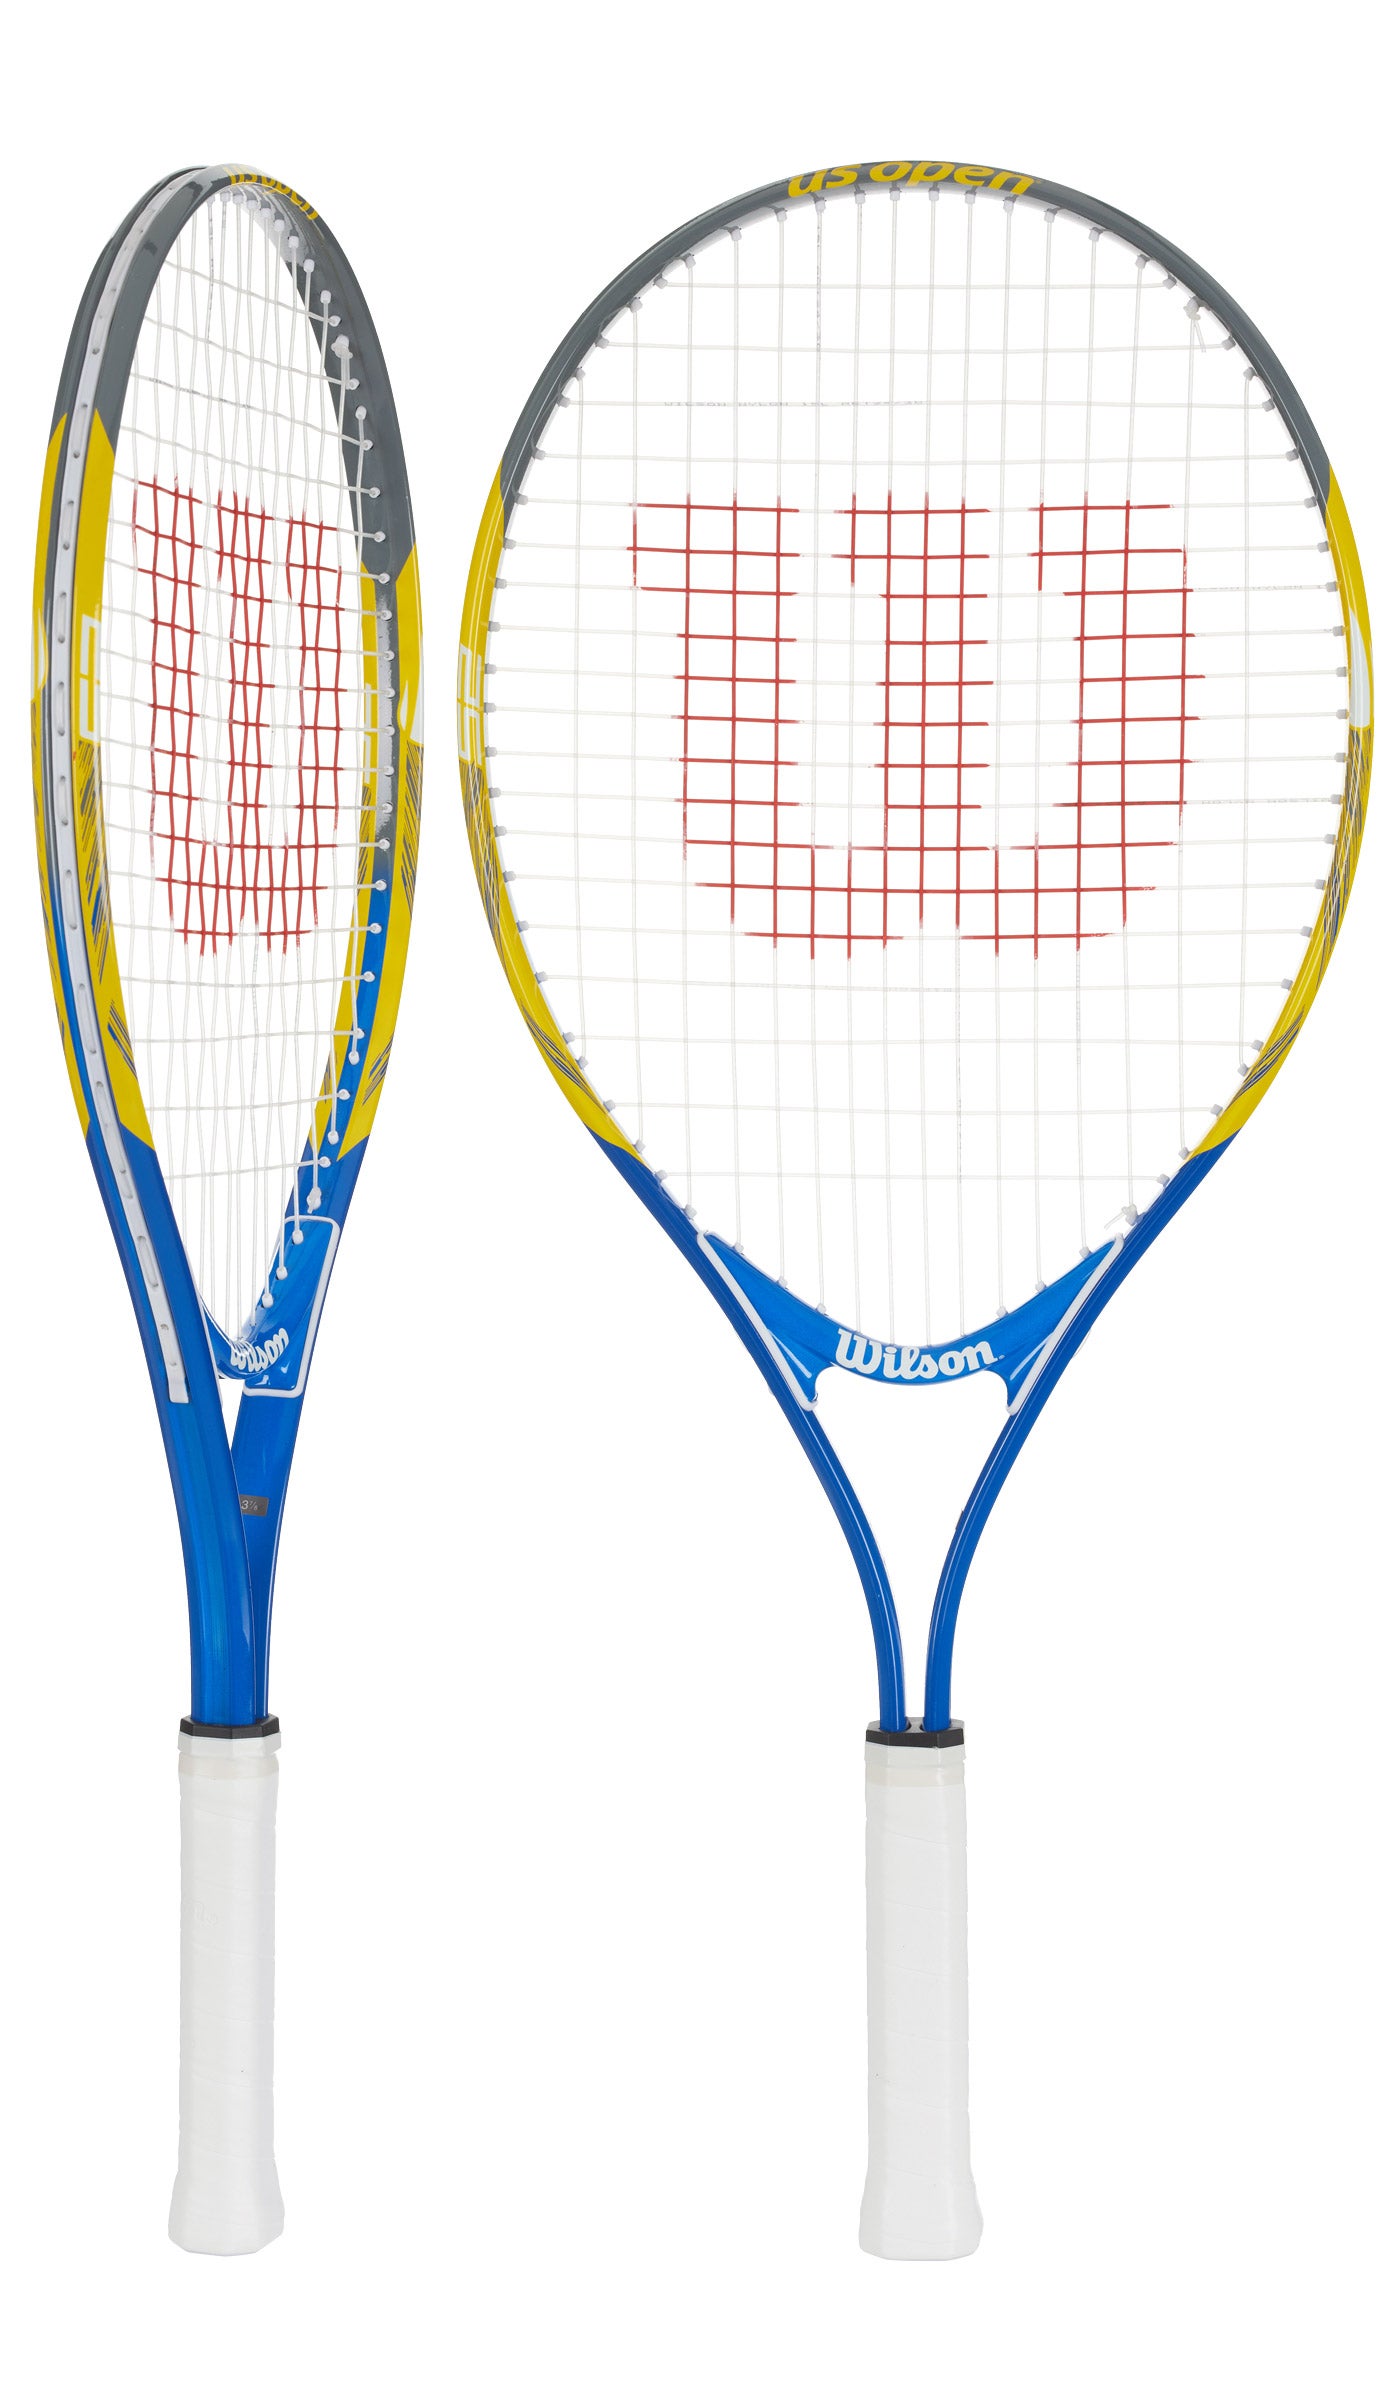 NEW Cheap Wilson US Open Tennis Racket 25" Ideal for Juniors Children Kids 